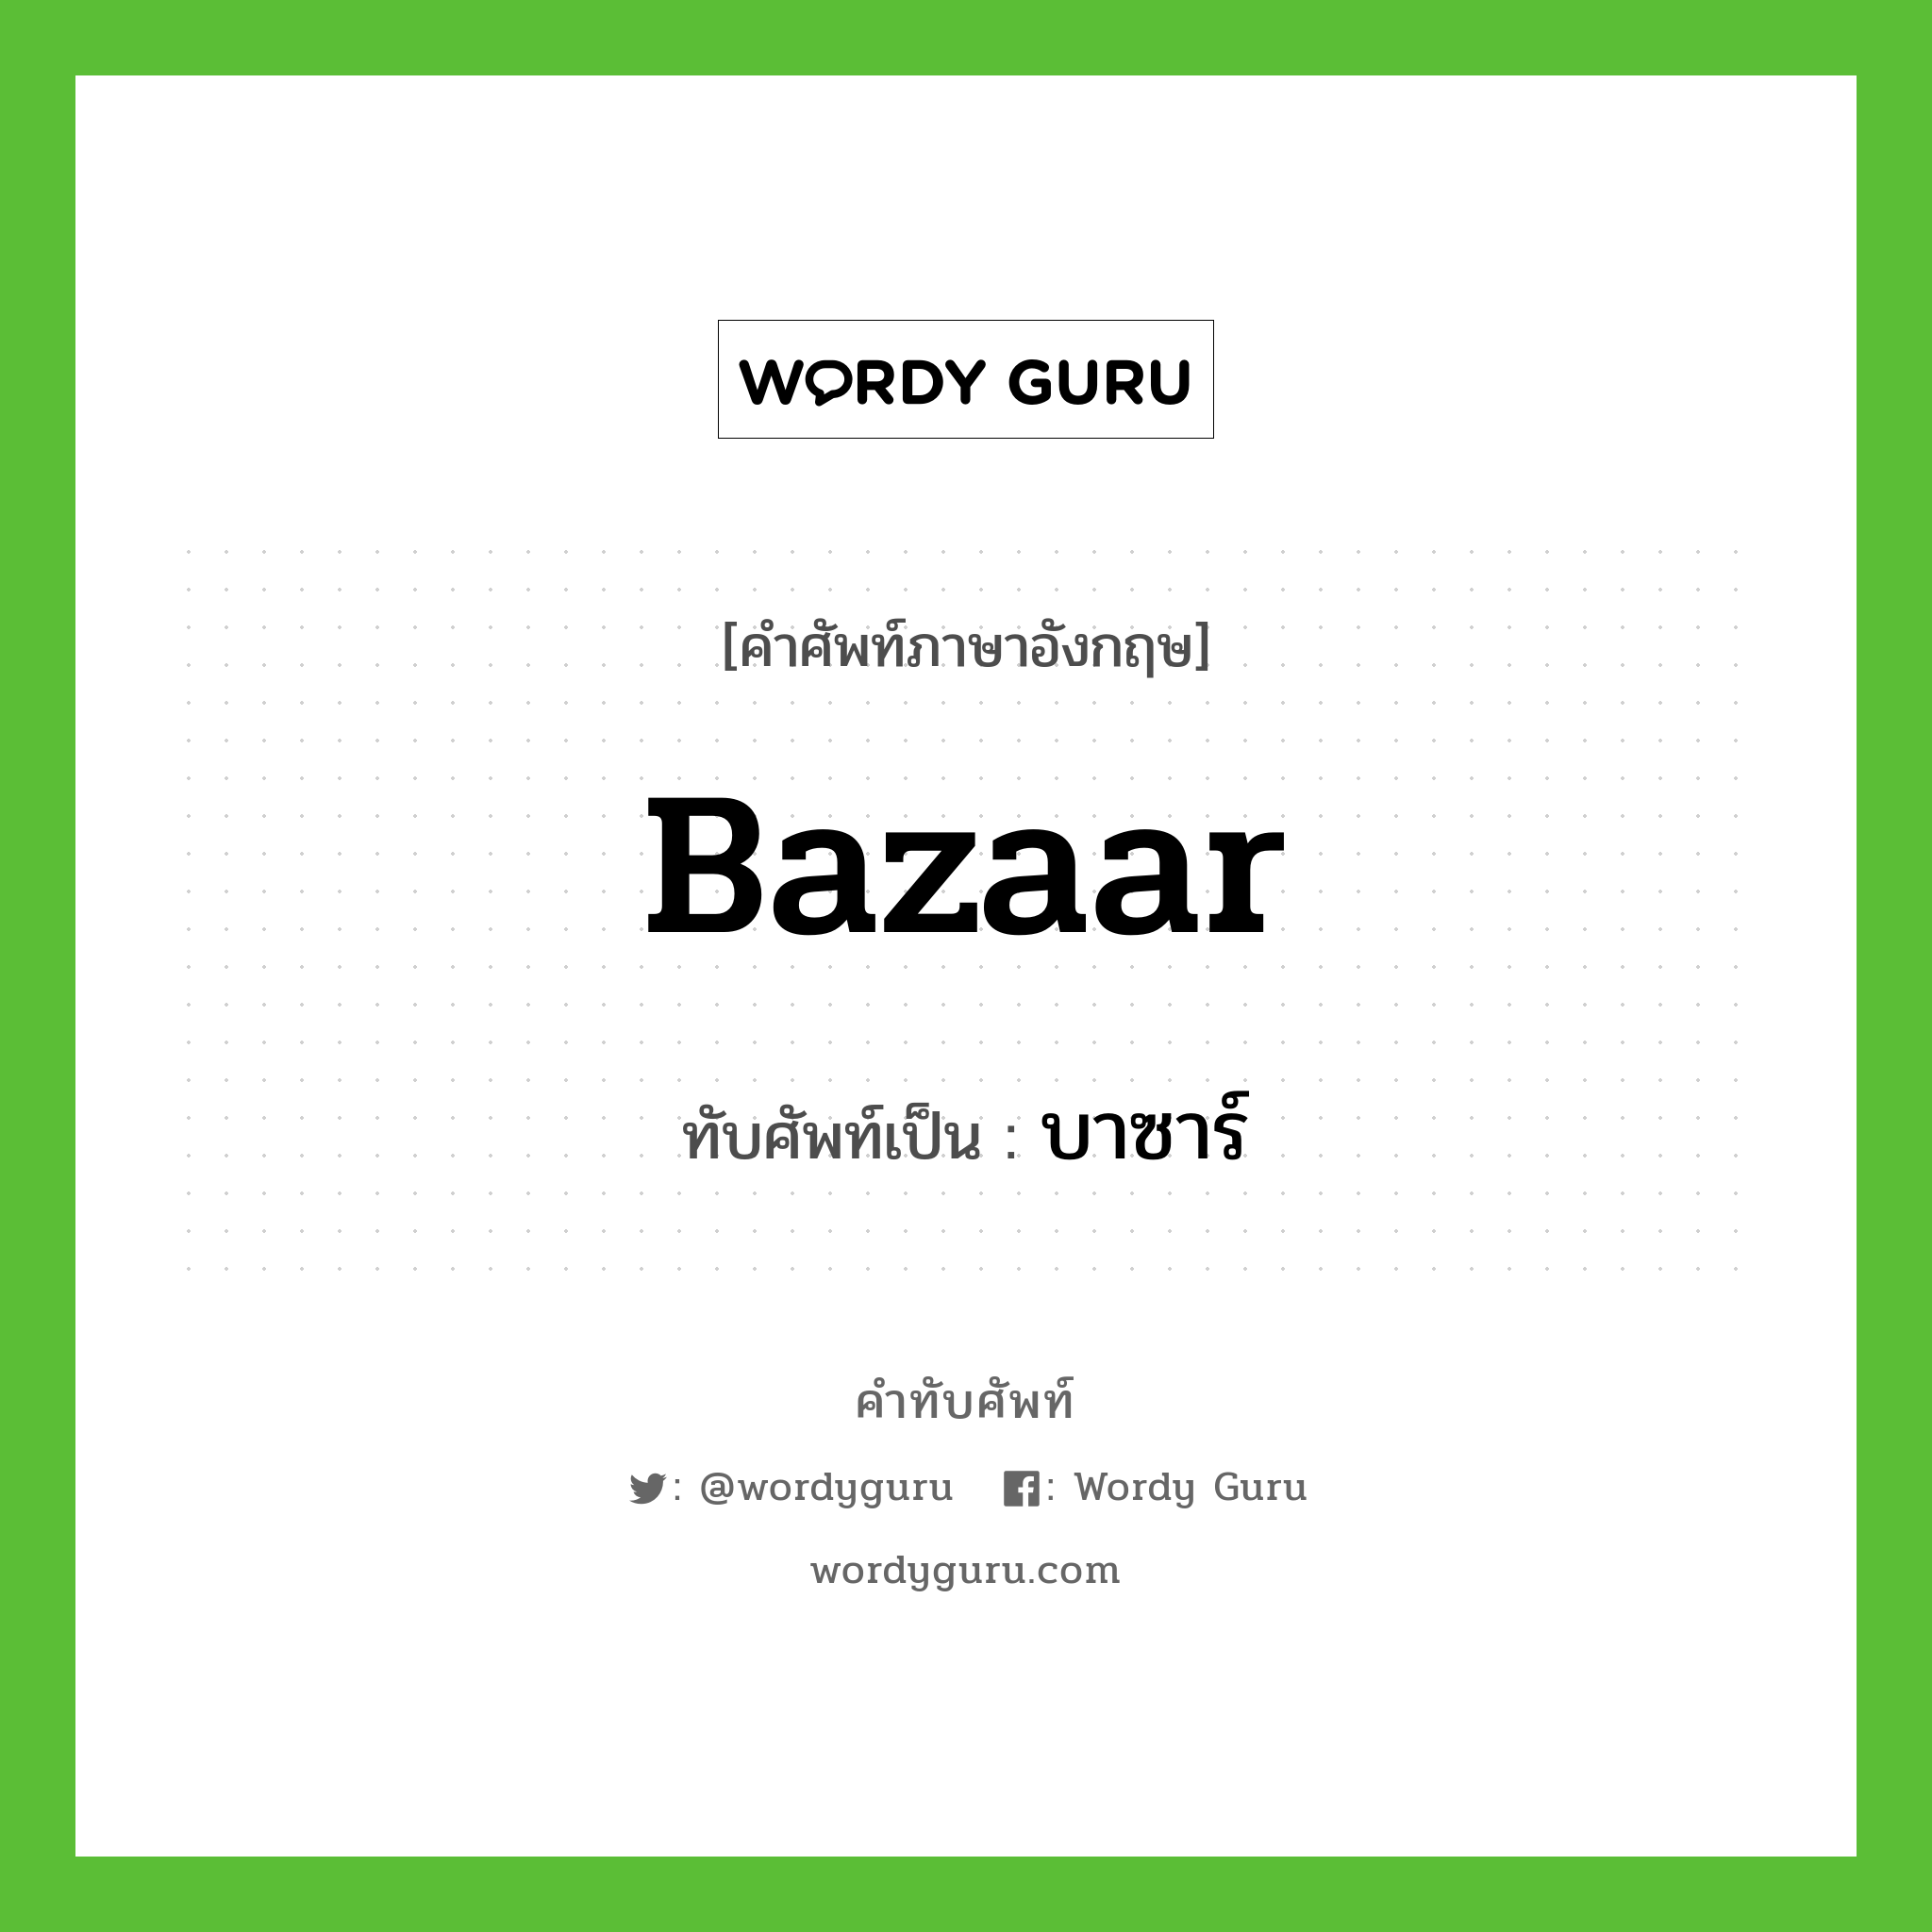 bazaar เขียนเป็นคำไทยว่าอะไร?, คำศัพท์ภาษาอังกฤษ bazaar ทับศัพท์เป็น บาซาร์